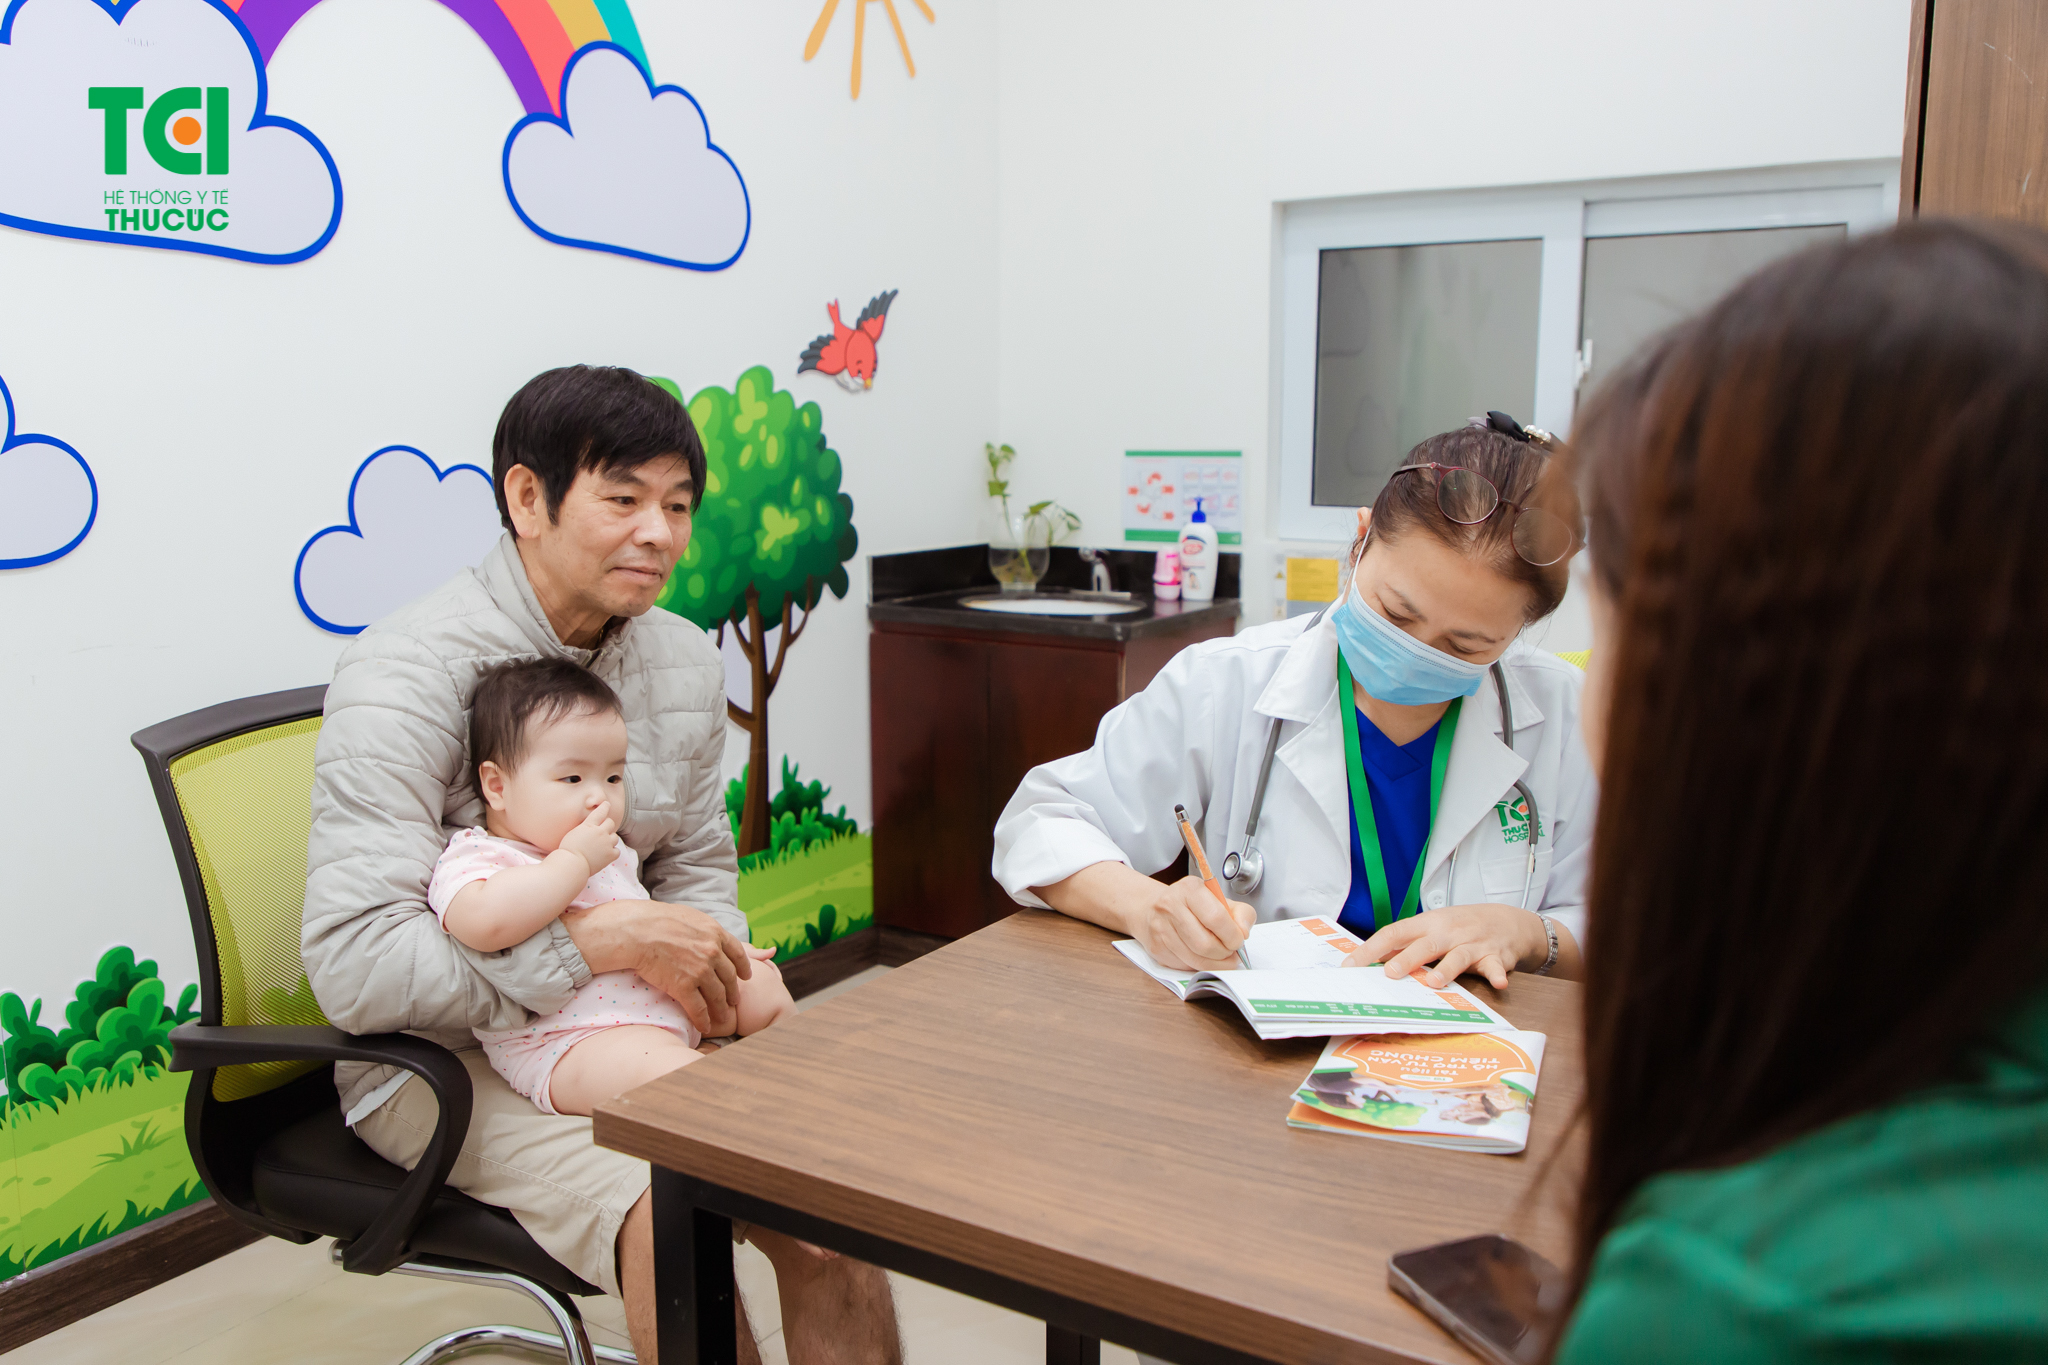 小児日本脳炎ワクチン接種